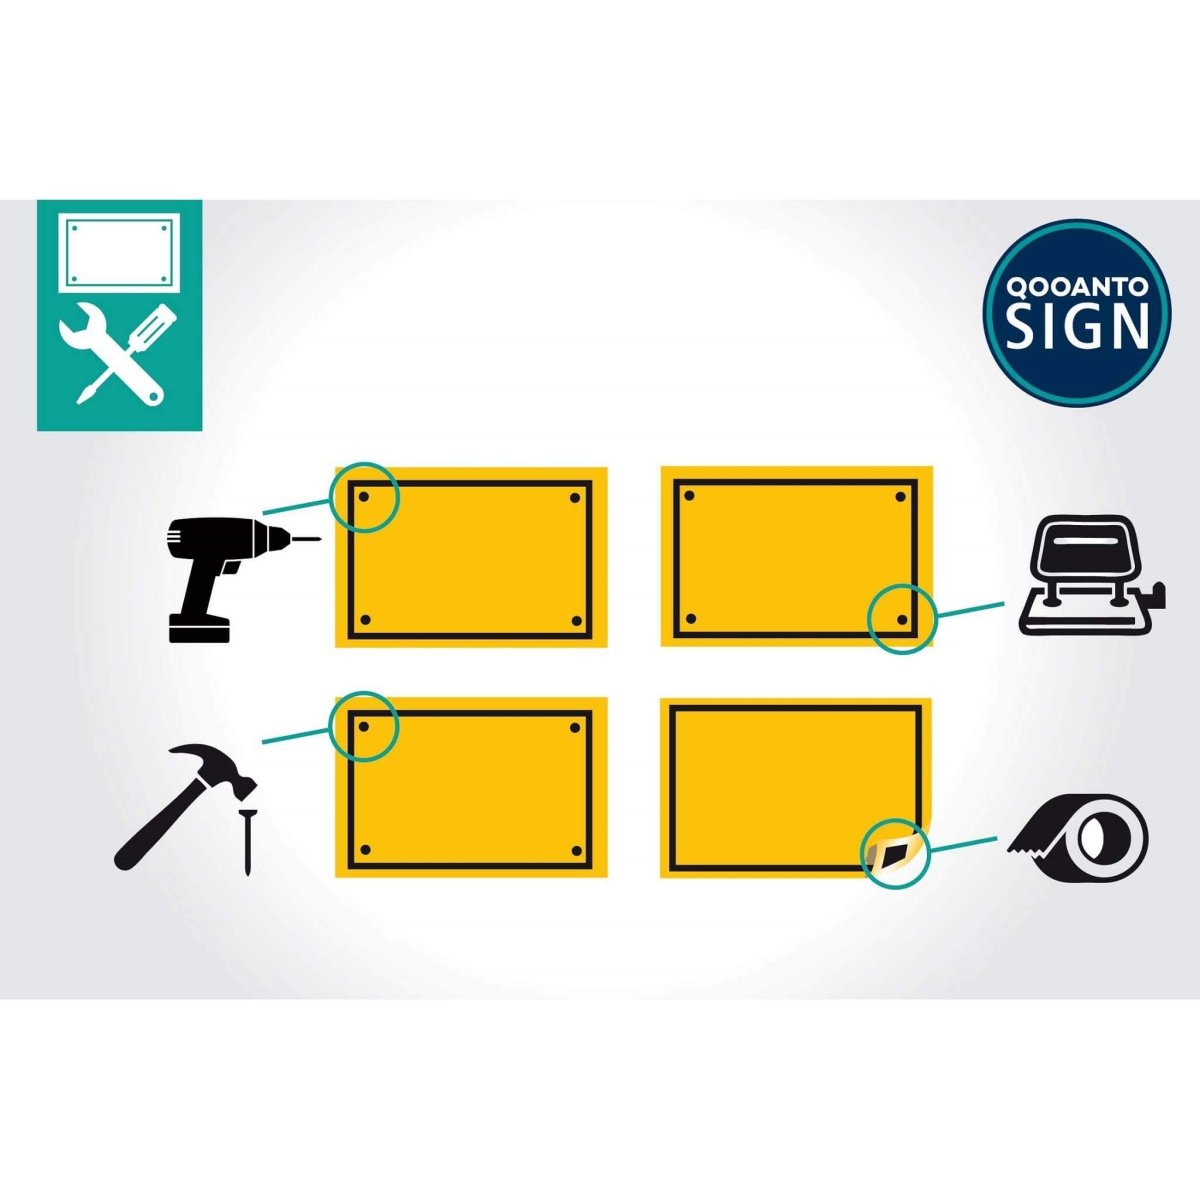 Privatgrundstück Parken Nur Für Kunden Schild aus Alu-Verbund mit UV-Schutz - QOOANTO-SIGN